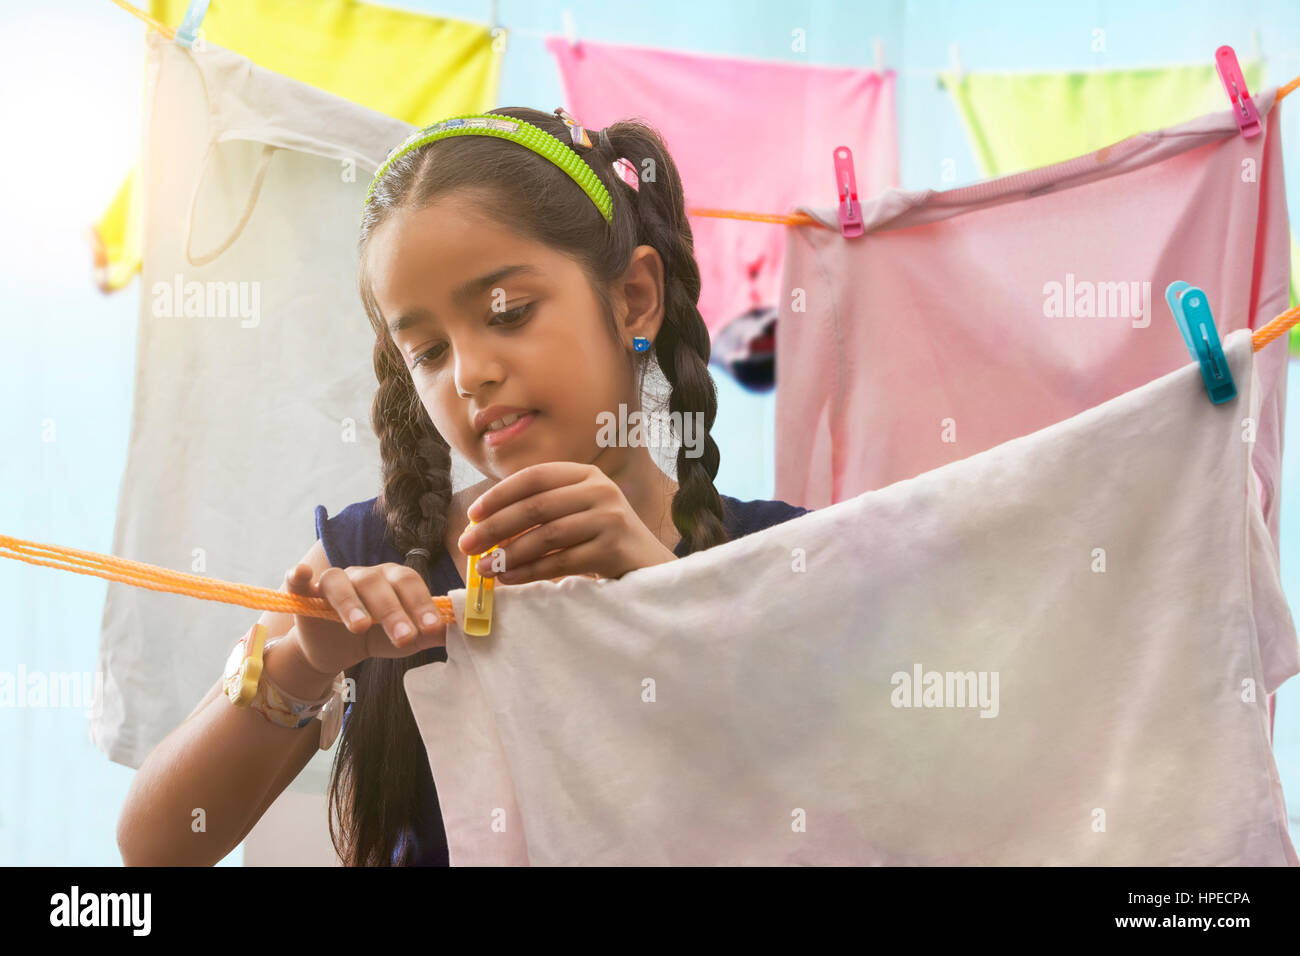 Junges Mädchen Tücher auf einer Wäscheleine trocknen Stockfoto